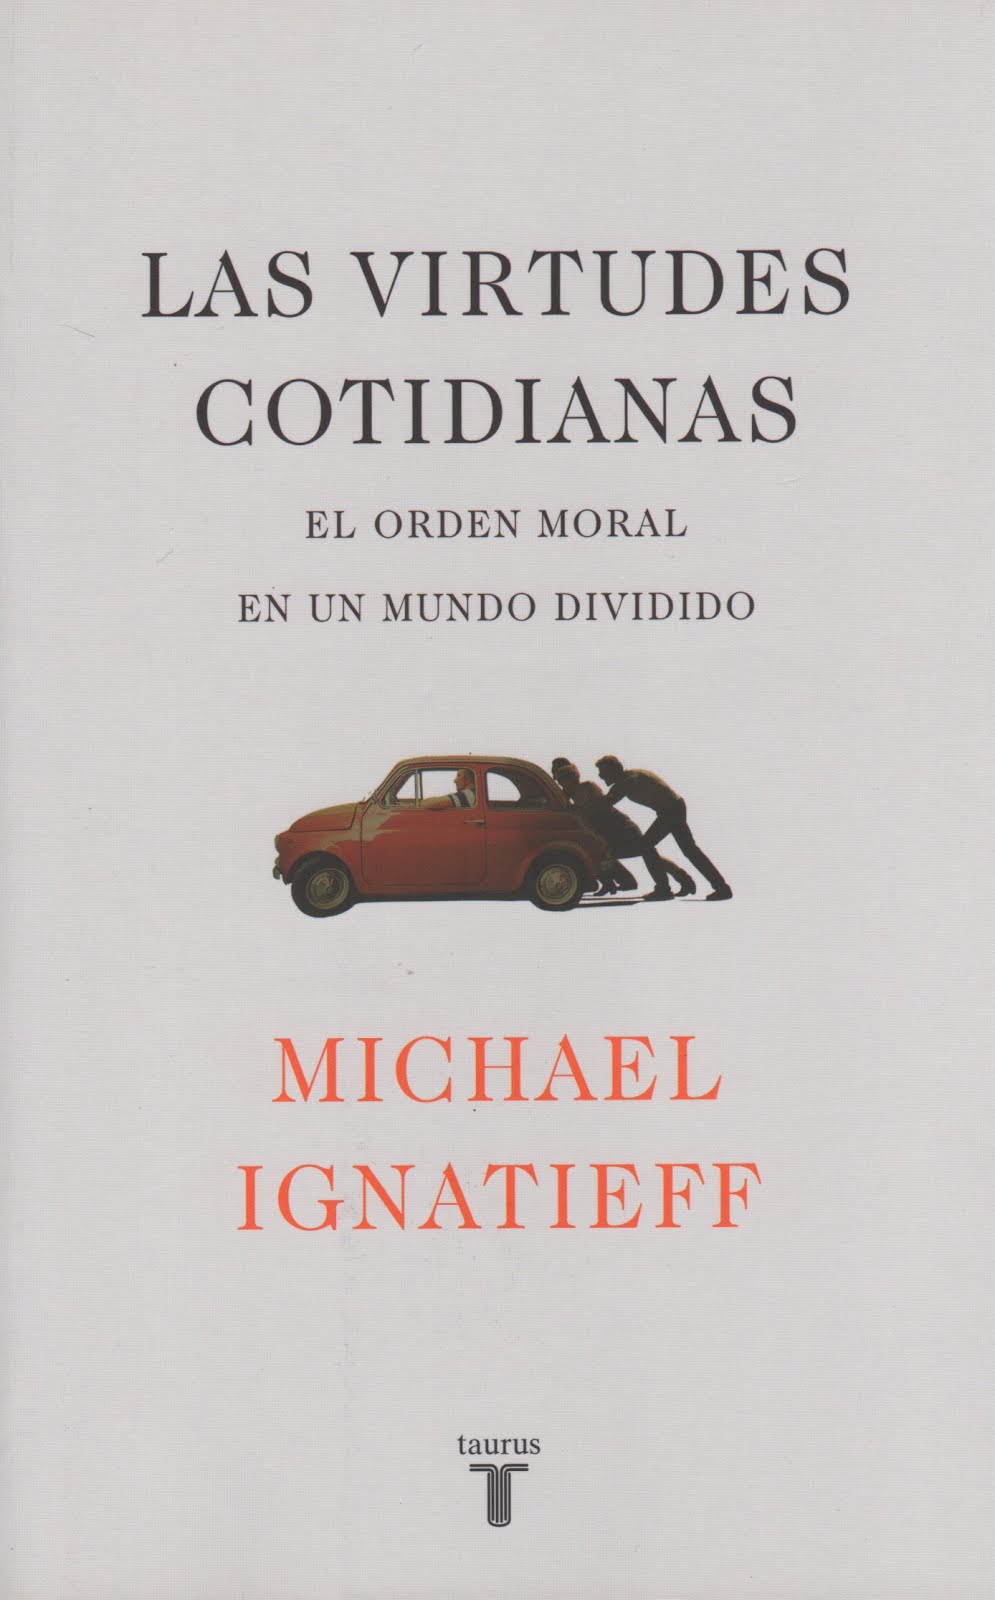 Michael Ignatieff (Las virtudes cotidianas) El orden moral en un mundo dividido